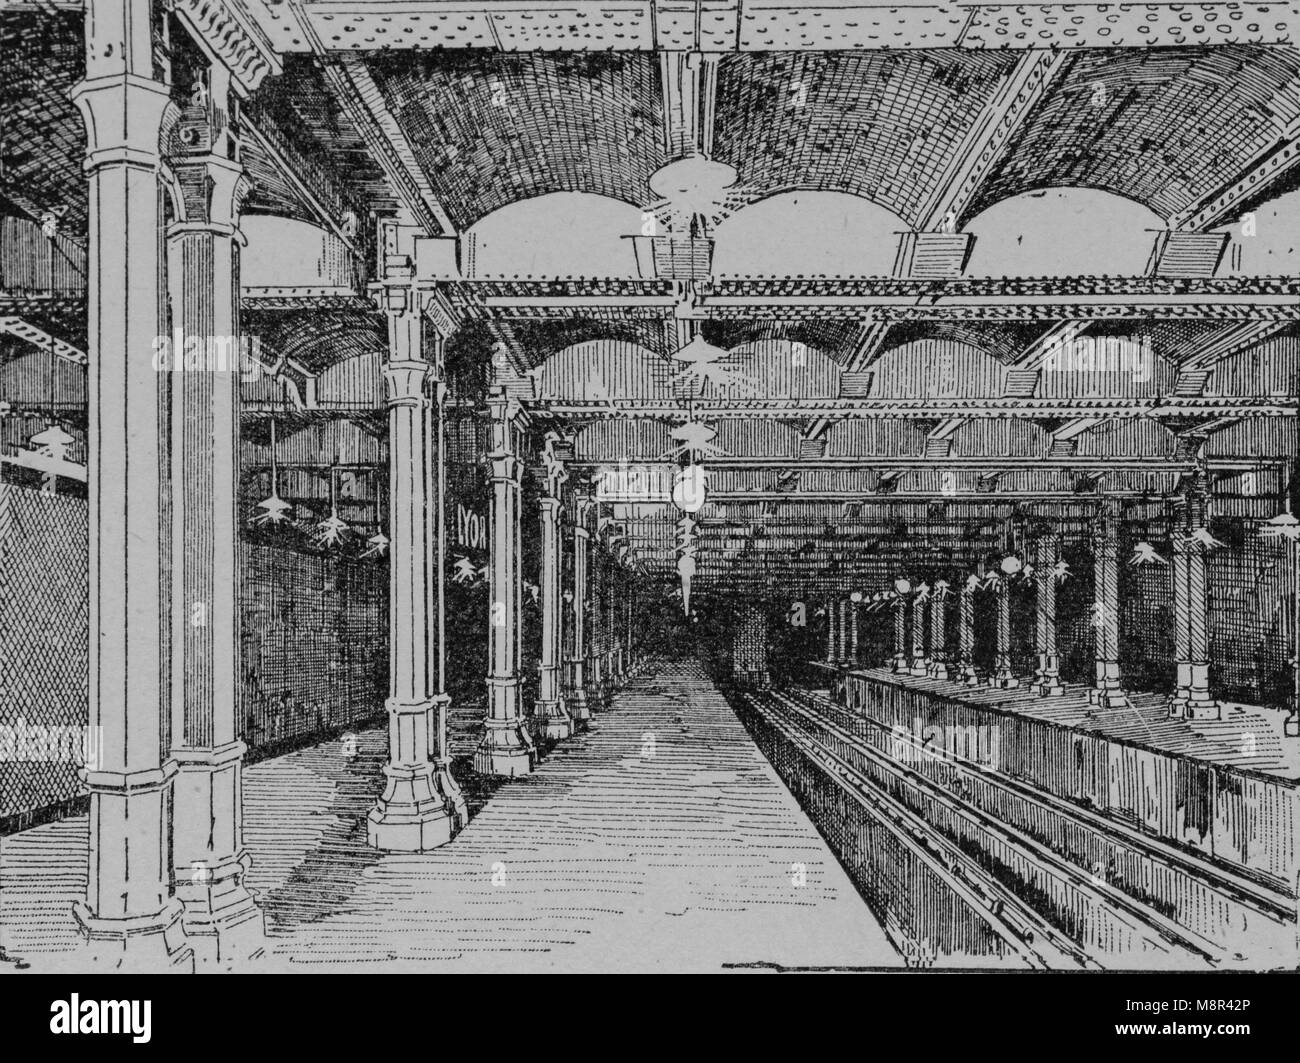 La station de métro, la gare de Lyon, Paris, Photo de l'hebdomadaire français journal l'illustration, 14 juillet 1900 Banque D'Images